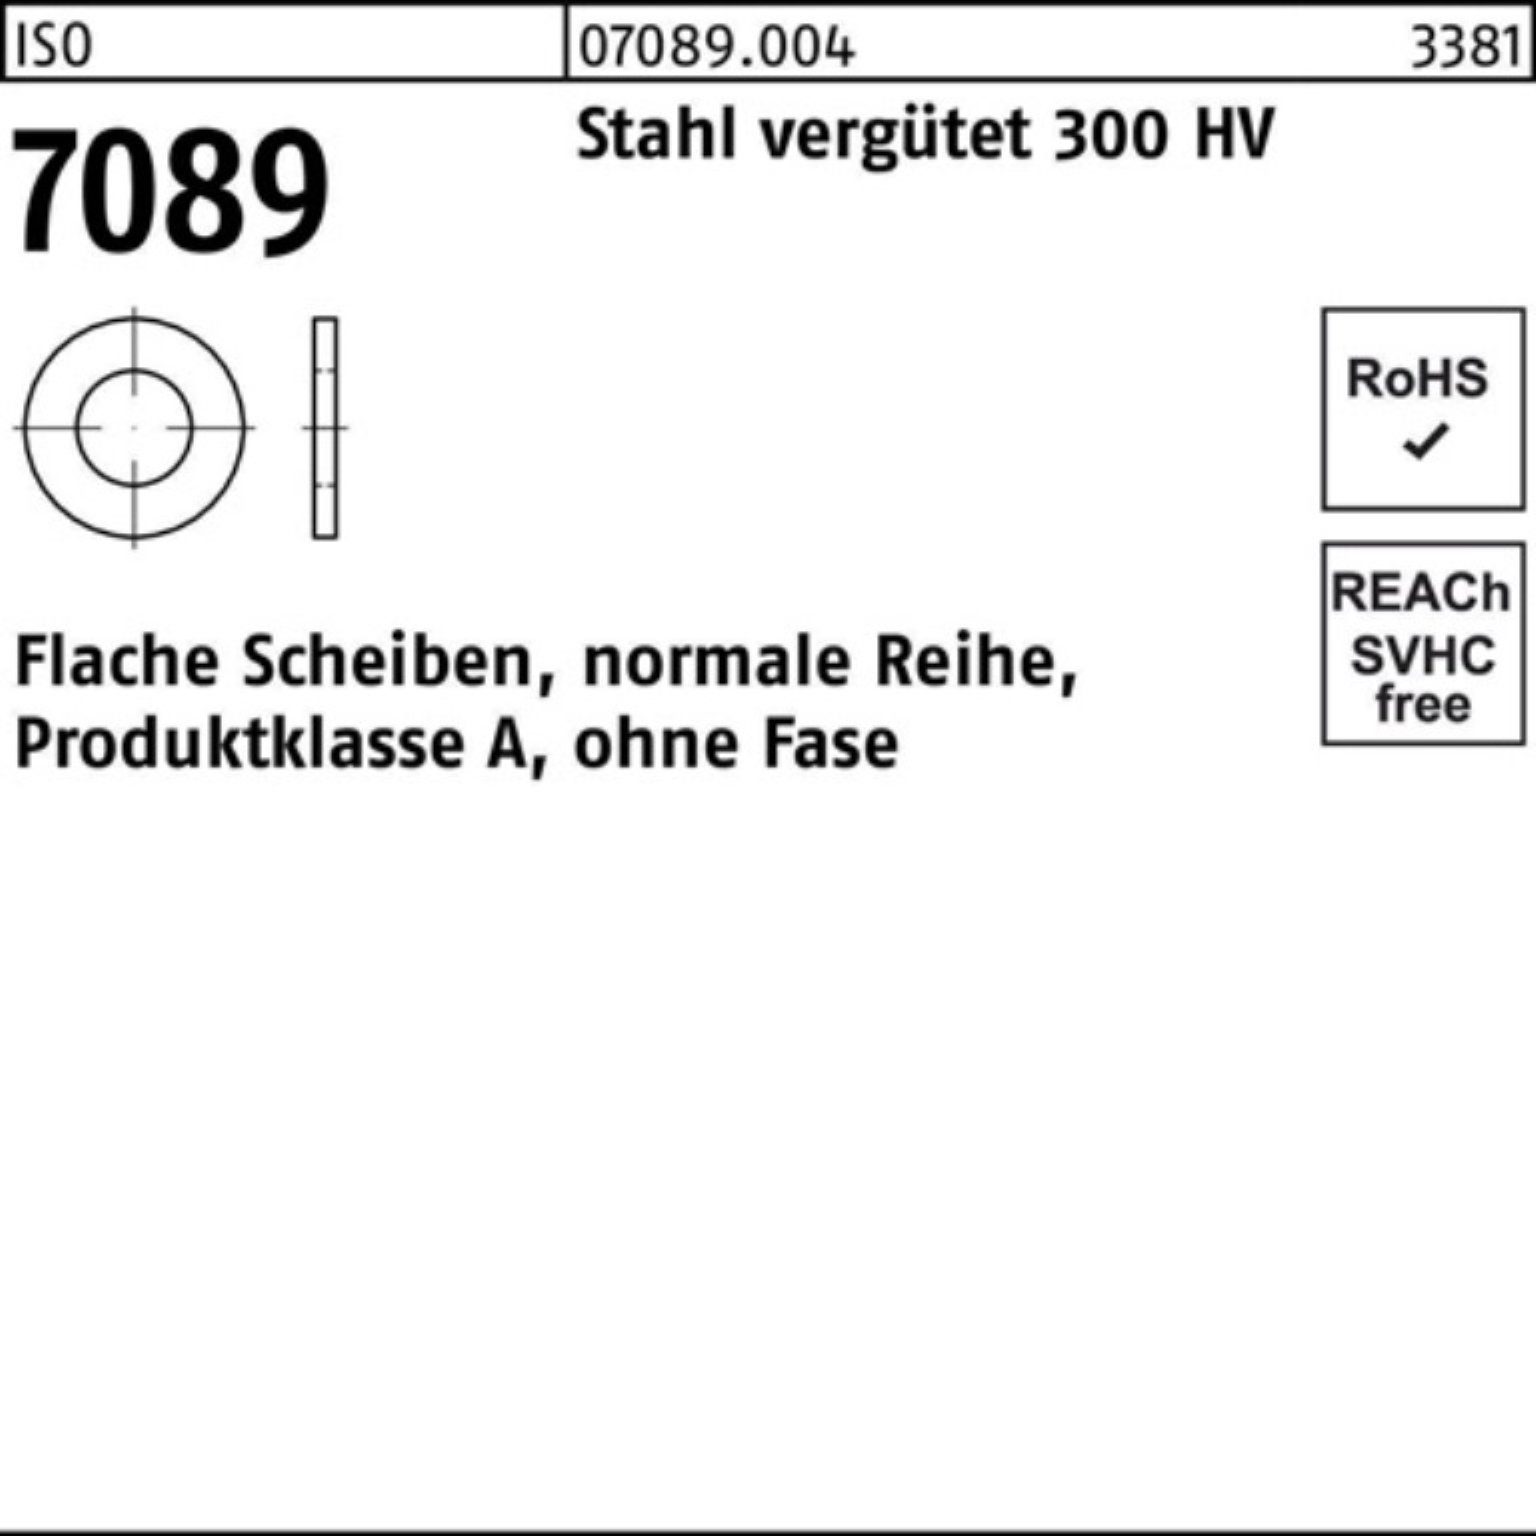 Bufab Unterlegscheibe Unterlegscheibe Pack HV o.Fase Stahl 30 100er 5 7089 ISO 300 vergütet